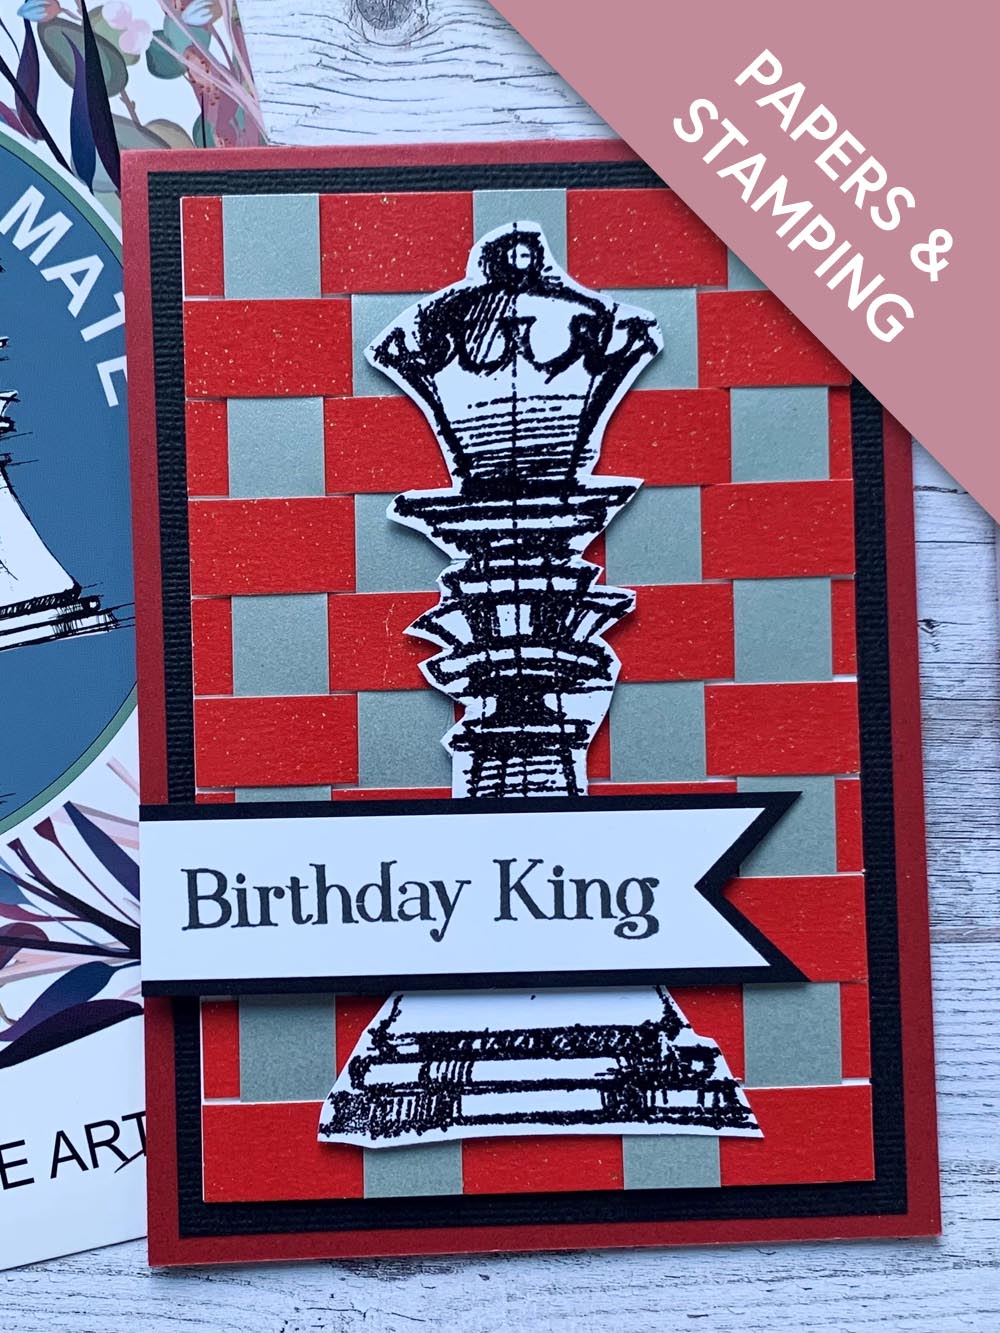 Birthday King (card created by Elaine)